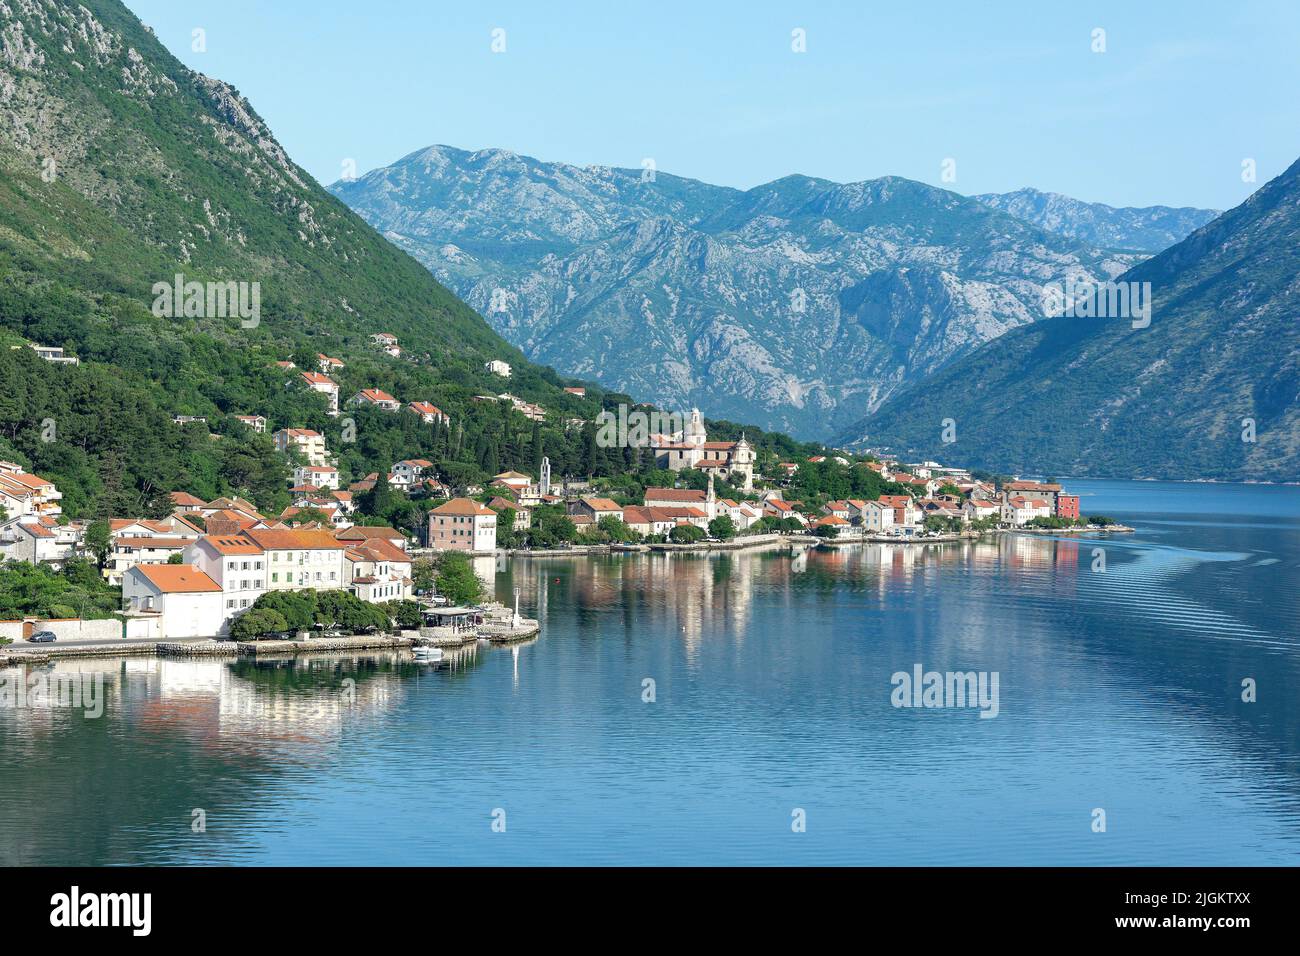 Coastal town of Prčanj, Bay of Kotor (Boka kotorska), Kotor, Dalmatia, Montenegro Stock Photo